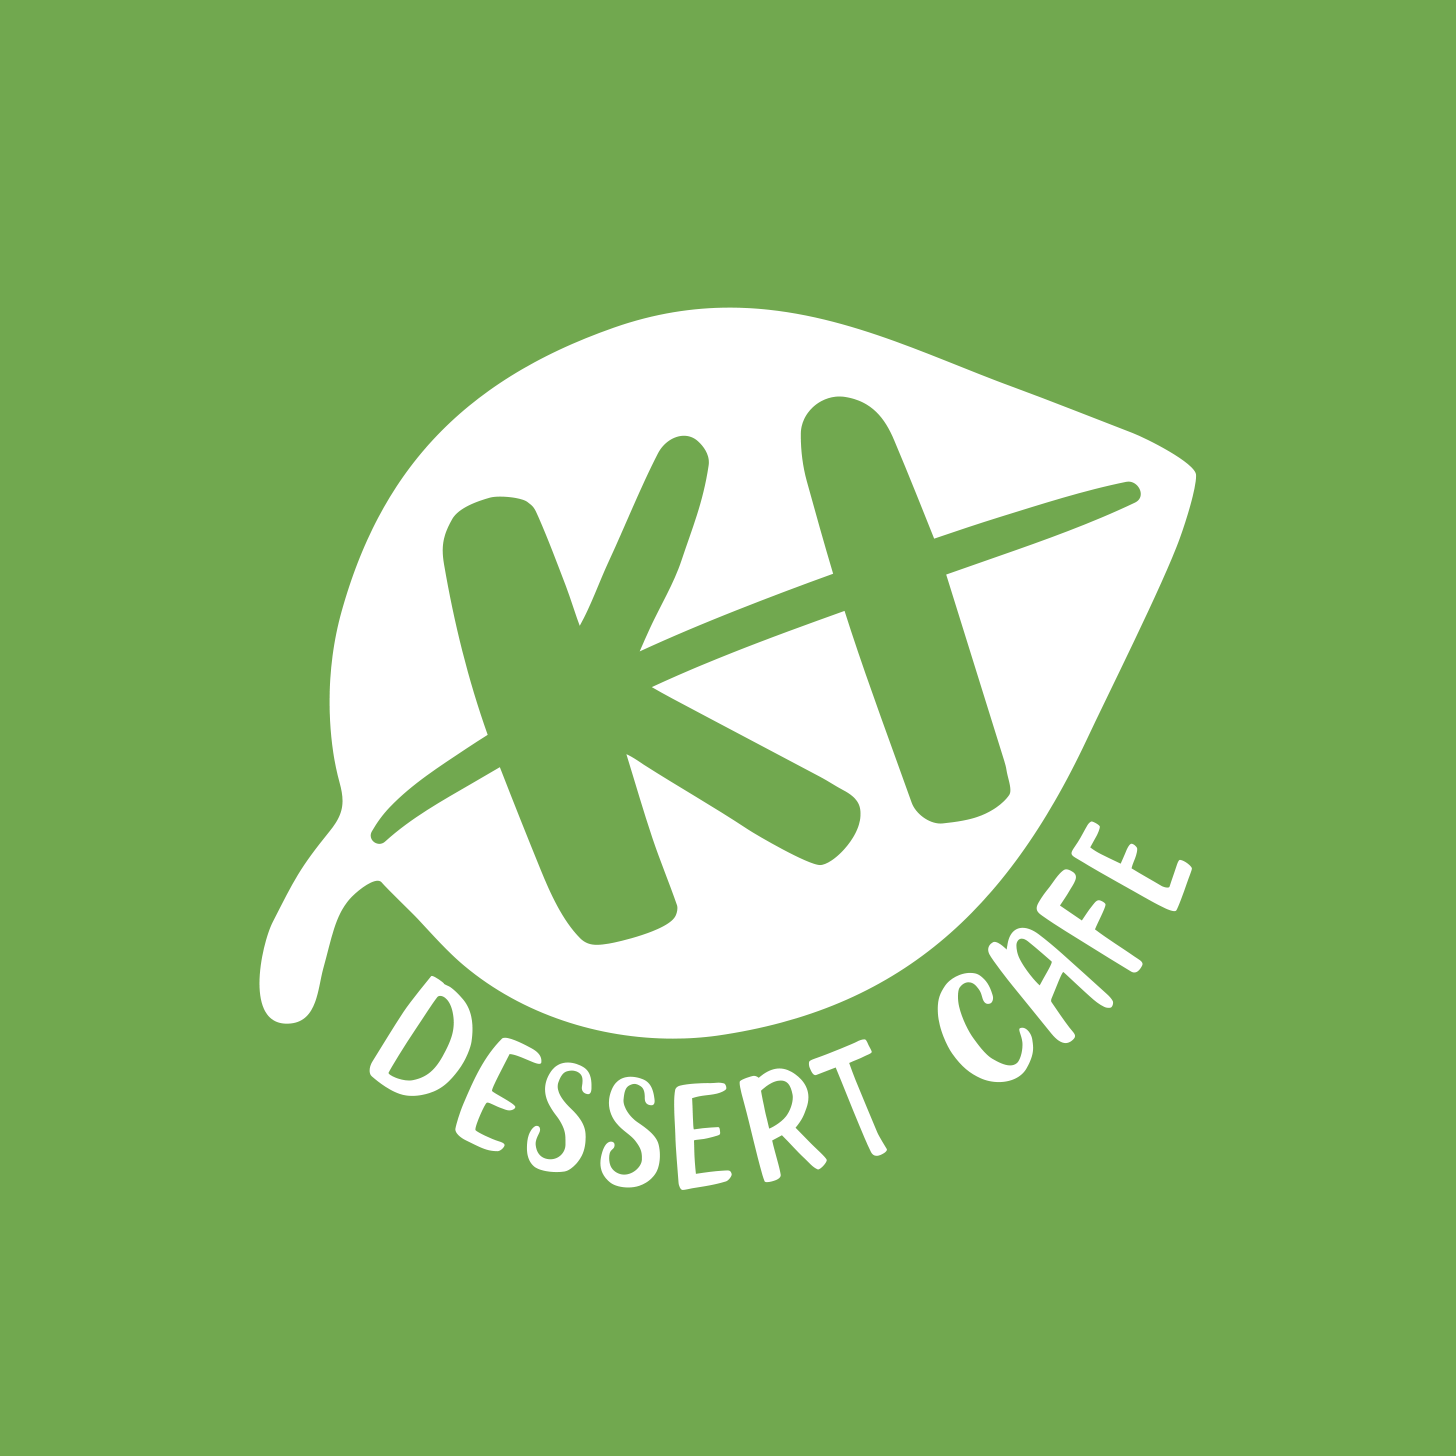 Order Desserts & Bubble Tea Online